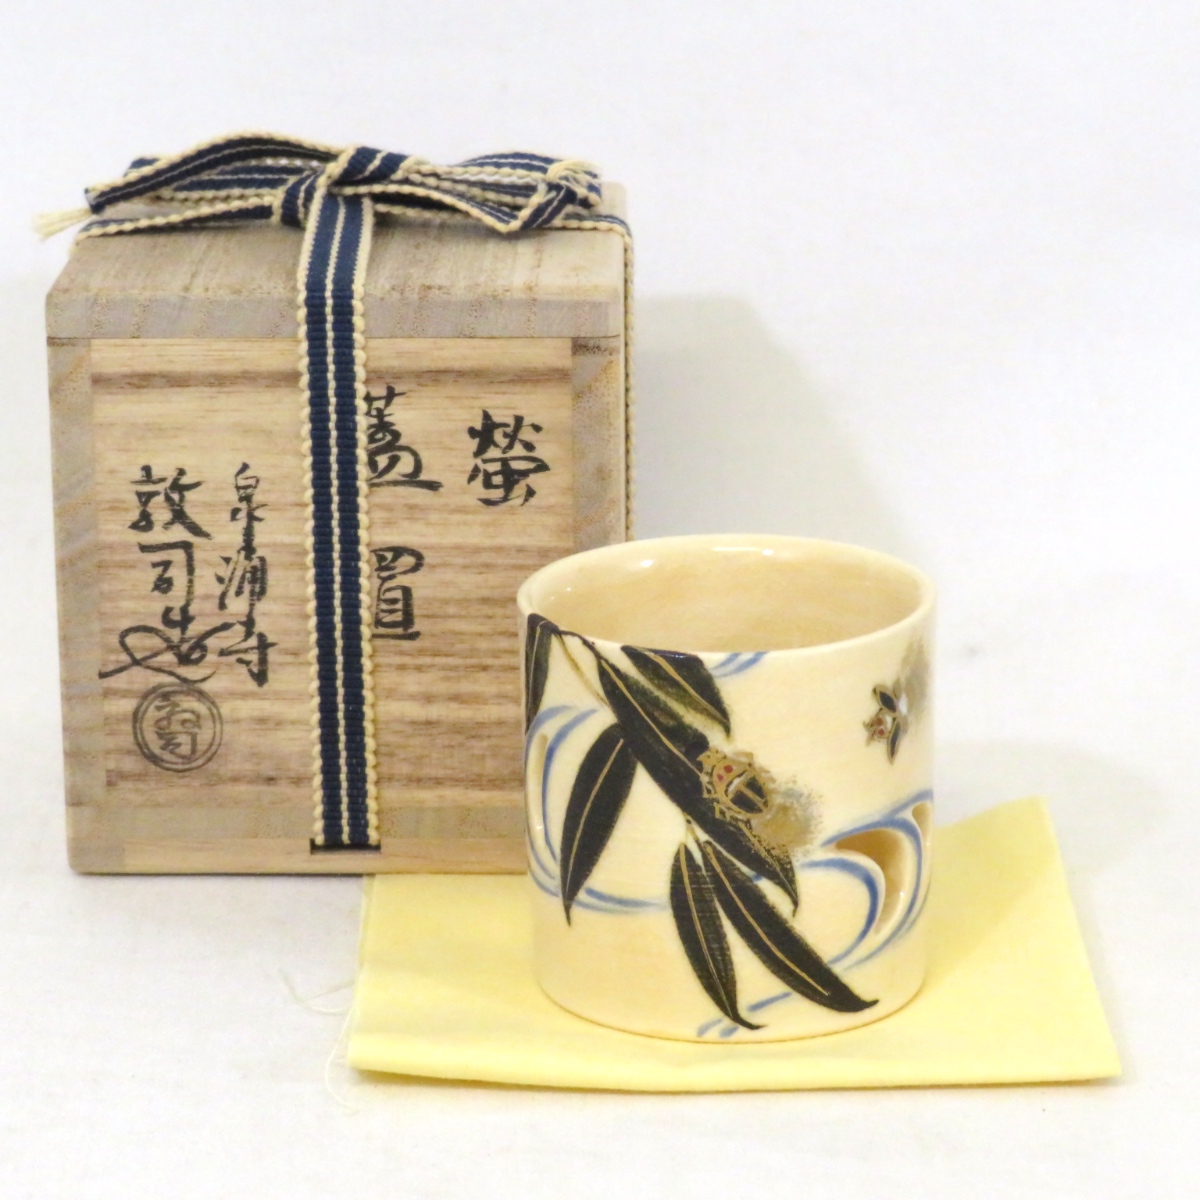 【夏の茶道具】平安 山川敦司作 螢 蓋置 流水透 蛍 茶道具【中古 美品】